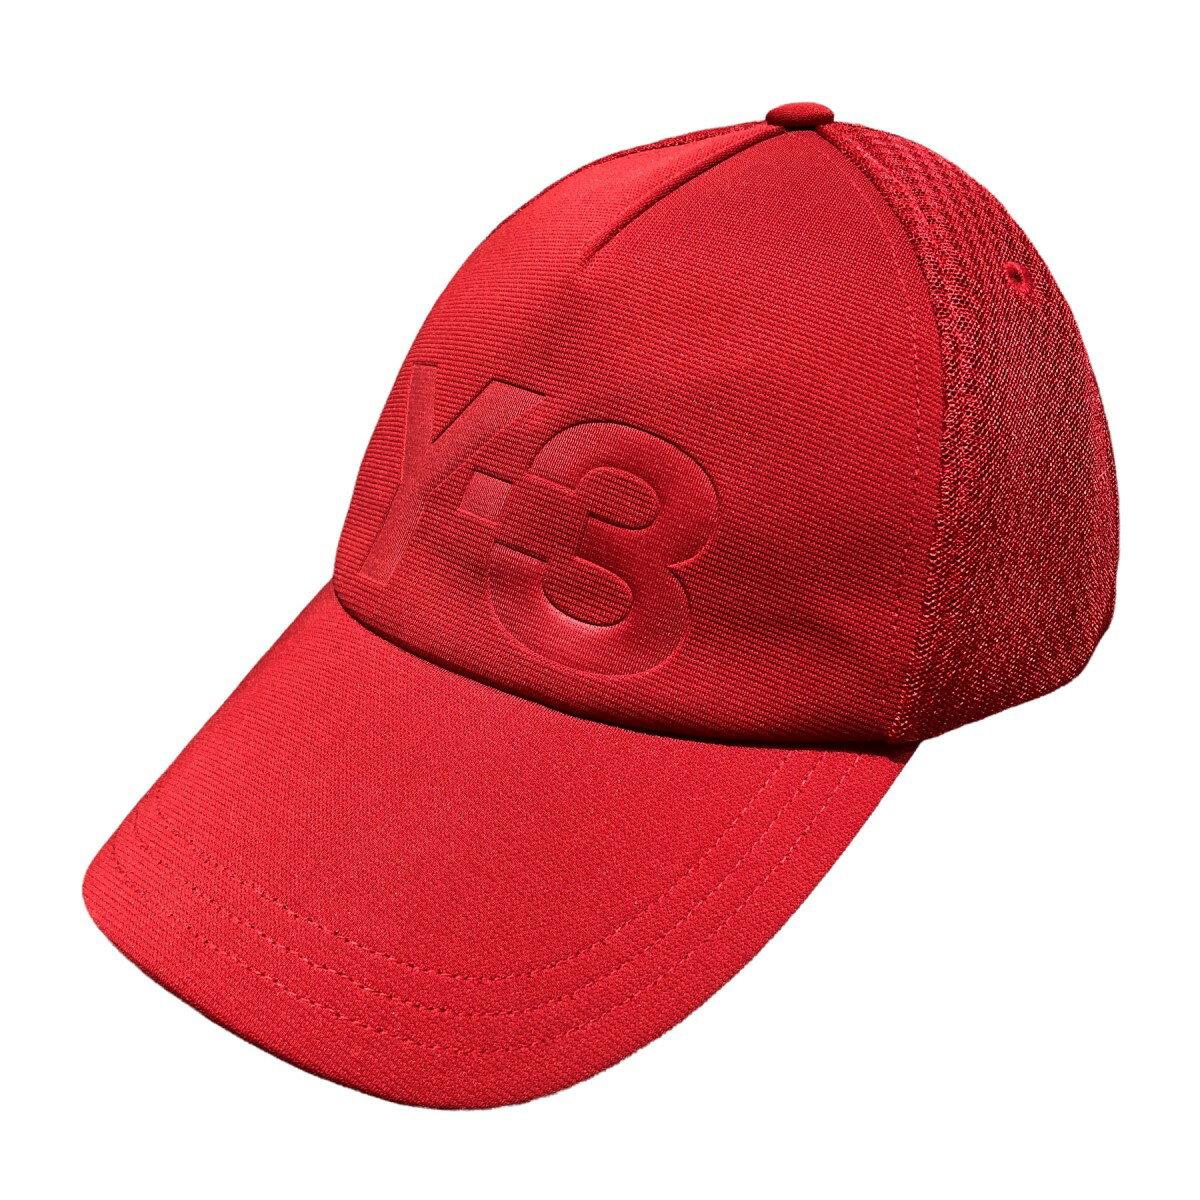 メンズ帽子, キャップ Y-3 TRUCKER CAP CHILLIPEPPER 290522